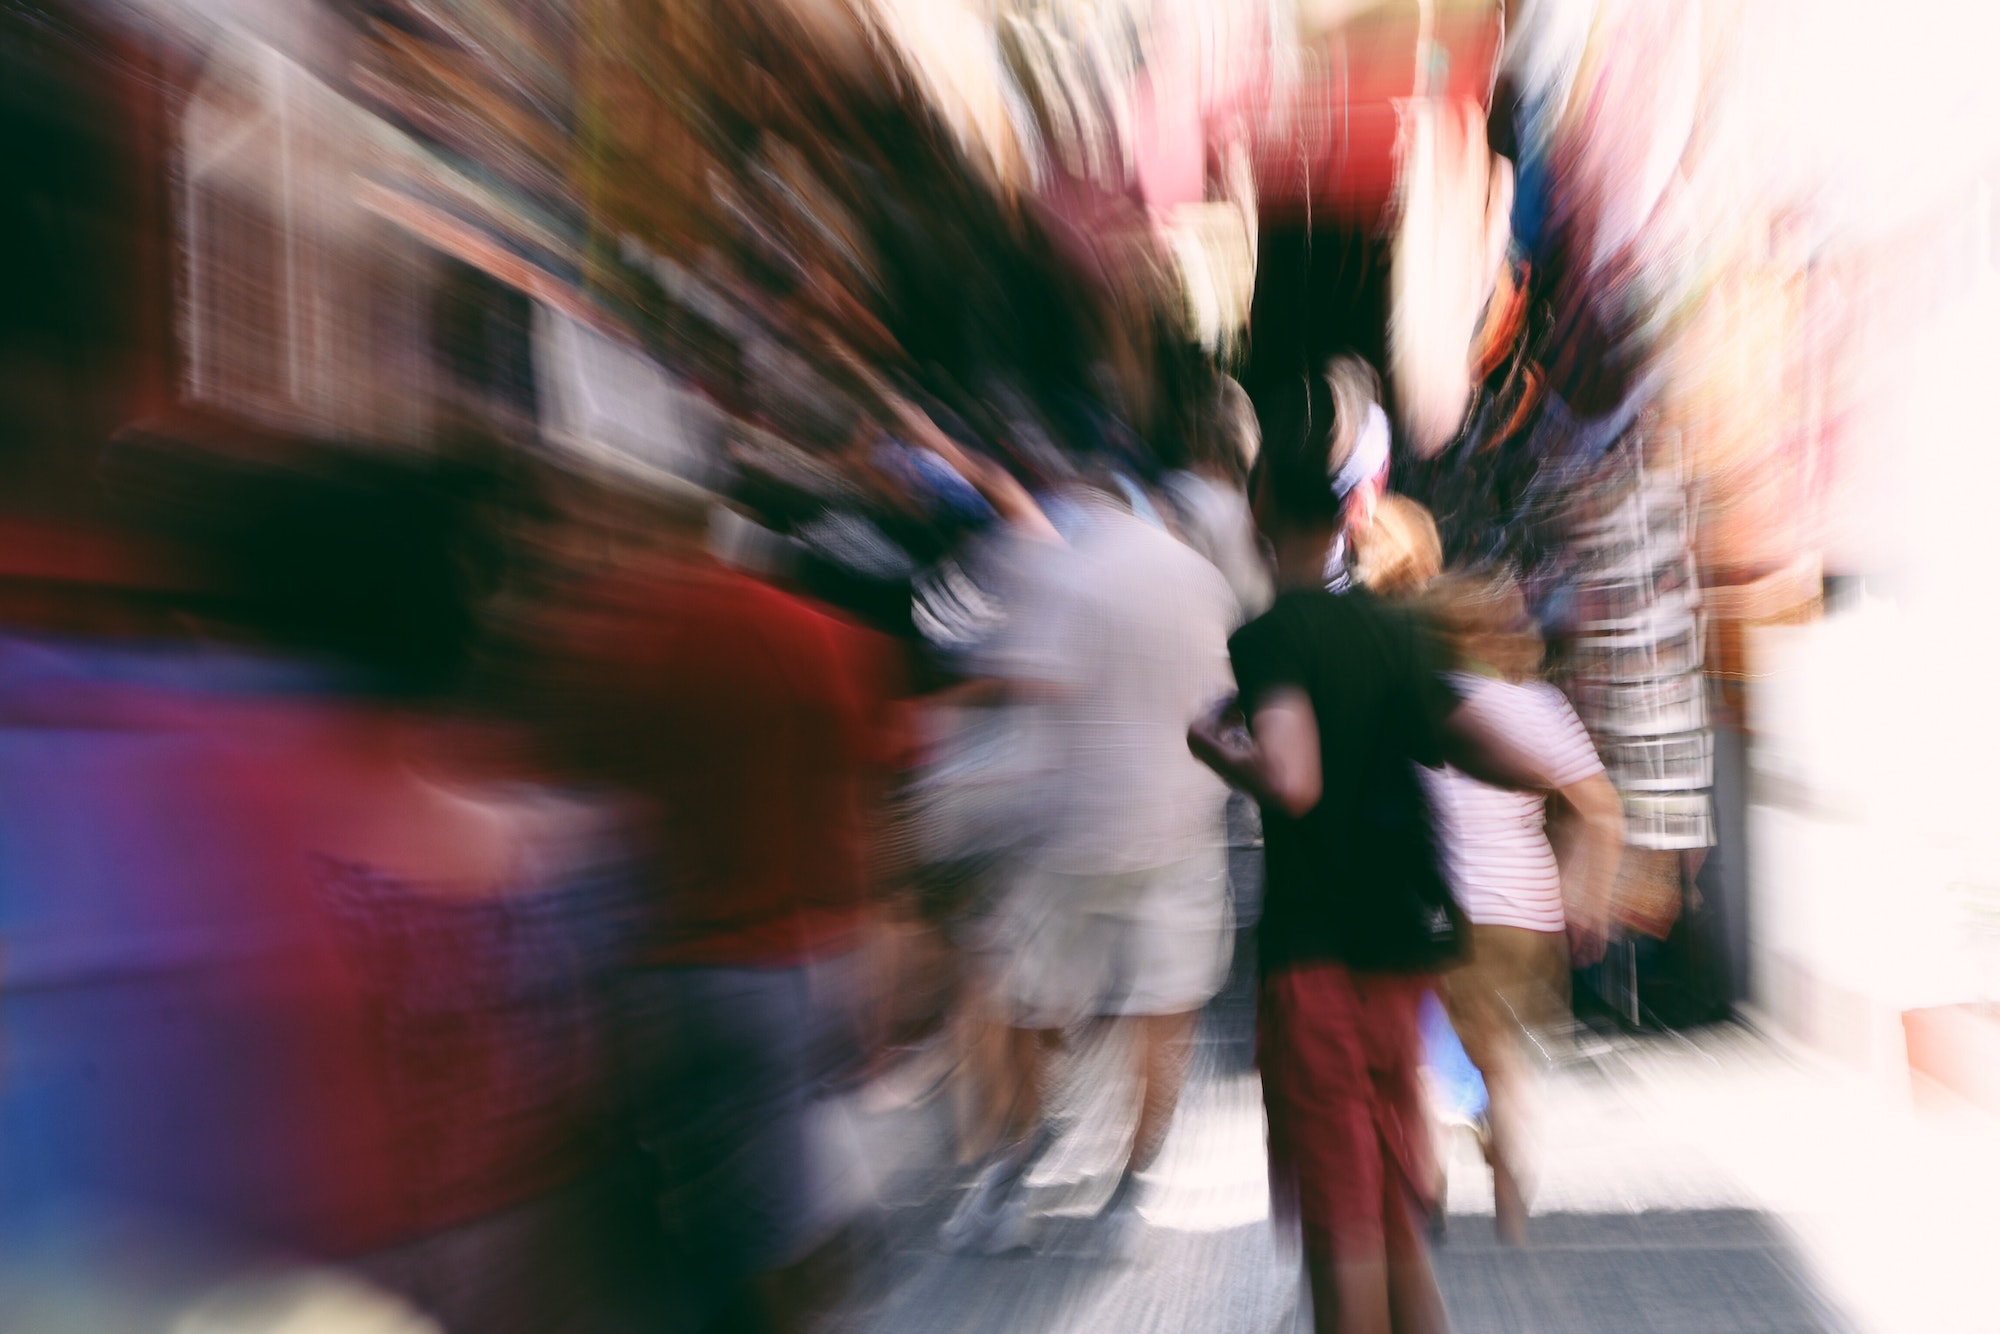 Motion blur in a street market